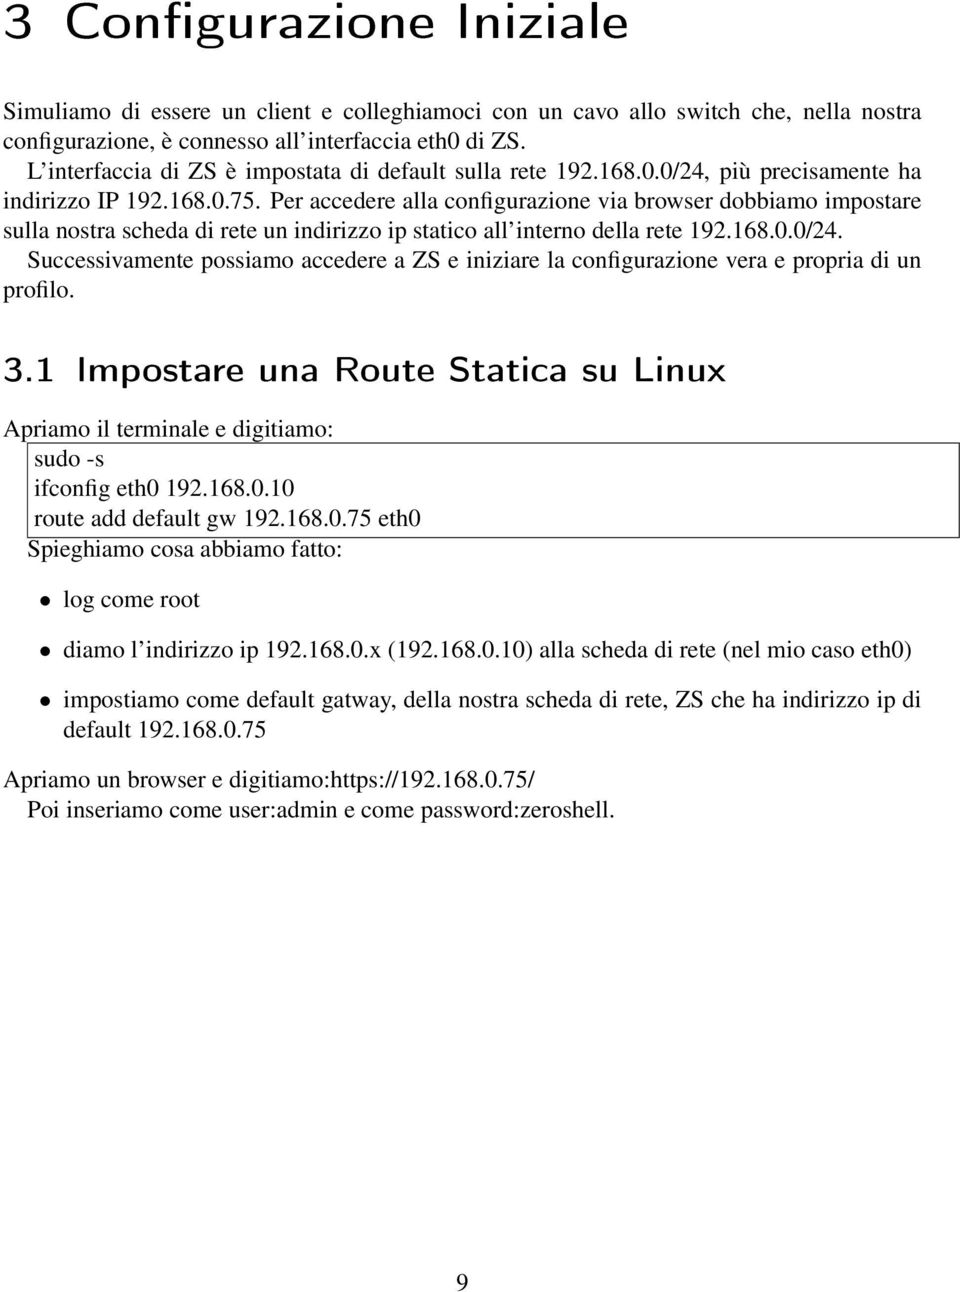 Per accedere alla configurazione via browser dobbiamo impostare sulla nostra scheda di rete un indirizzo ip statico all interno della rete 192.168.0.0/24.